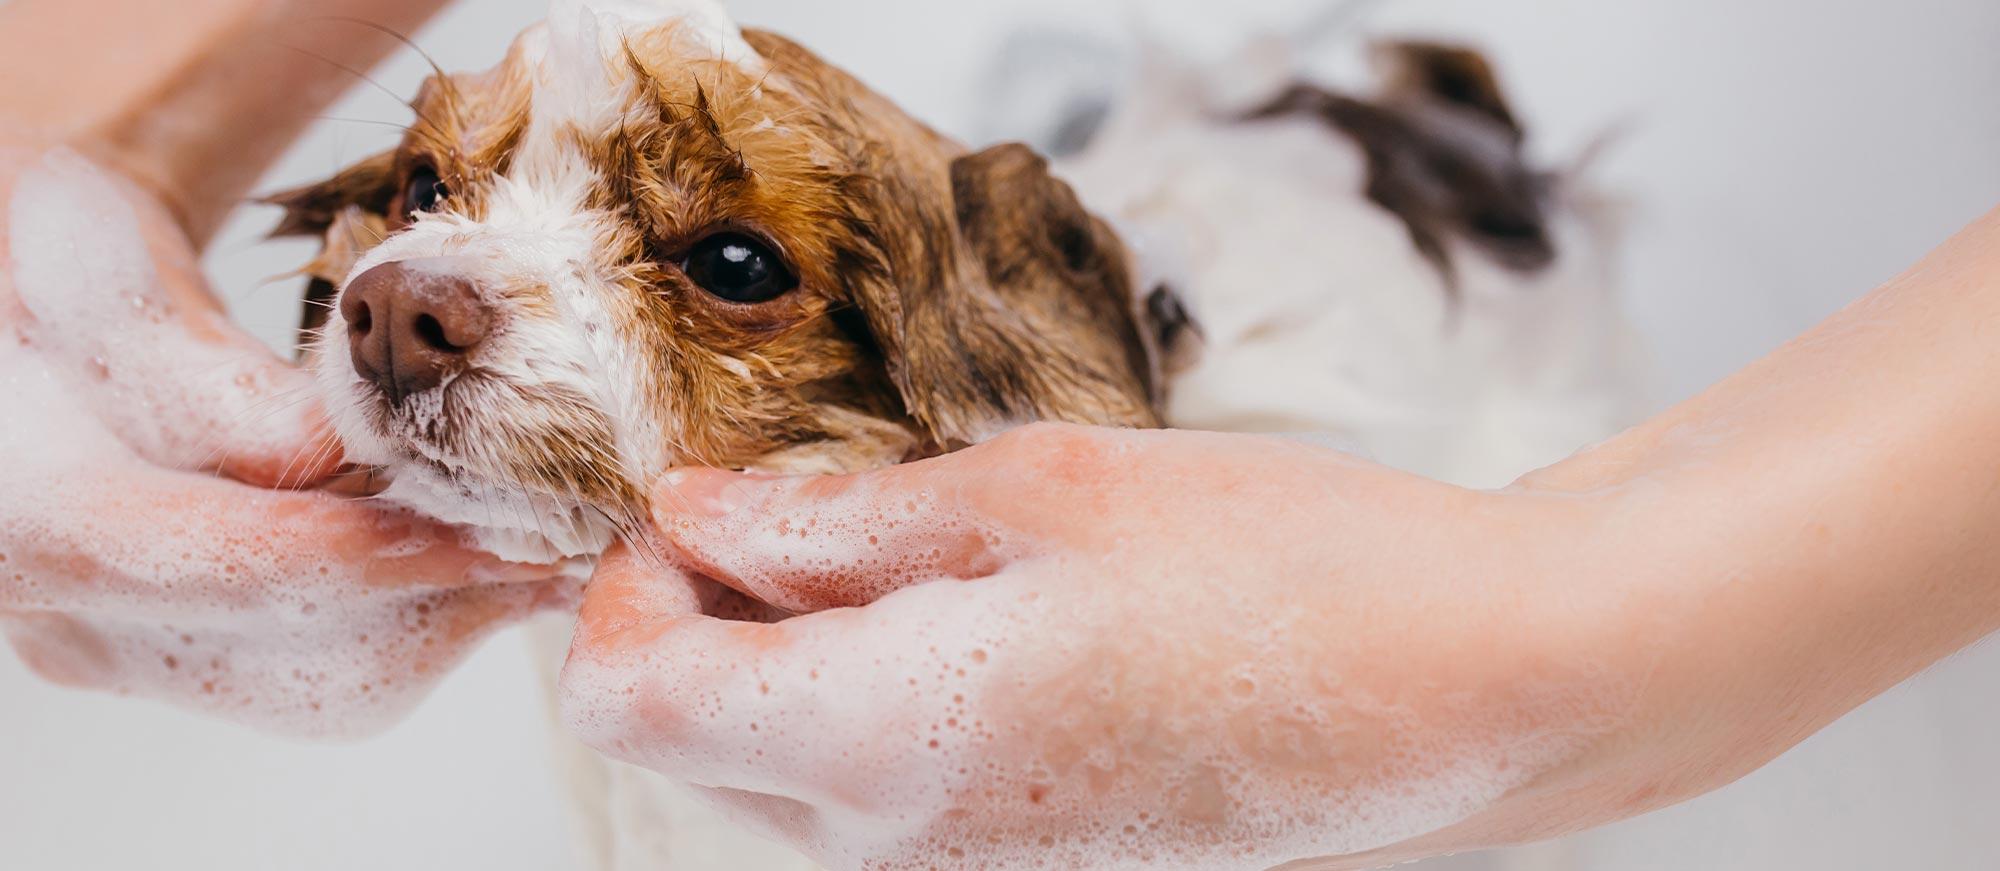 Toilettage du chien : c'est l'heure du bain !